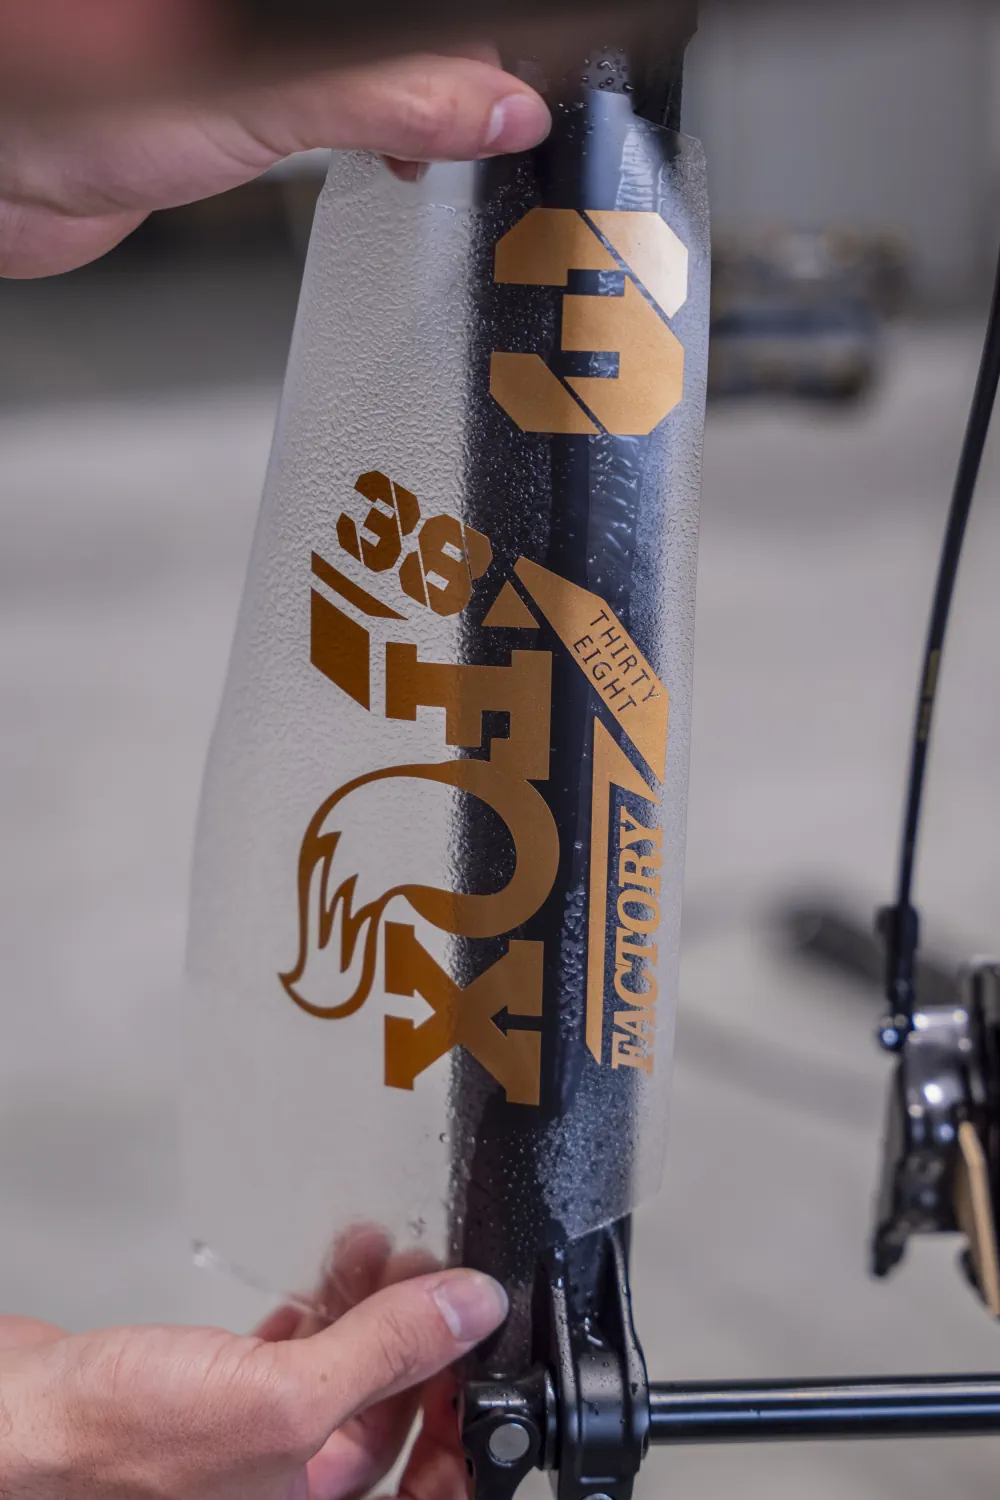 Naklejka z logotypem Fox aplikowana na amortyzator roweru